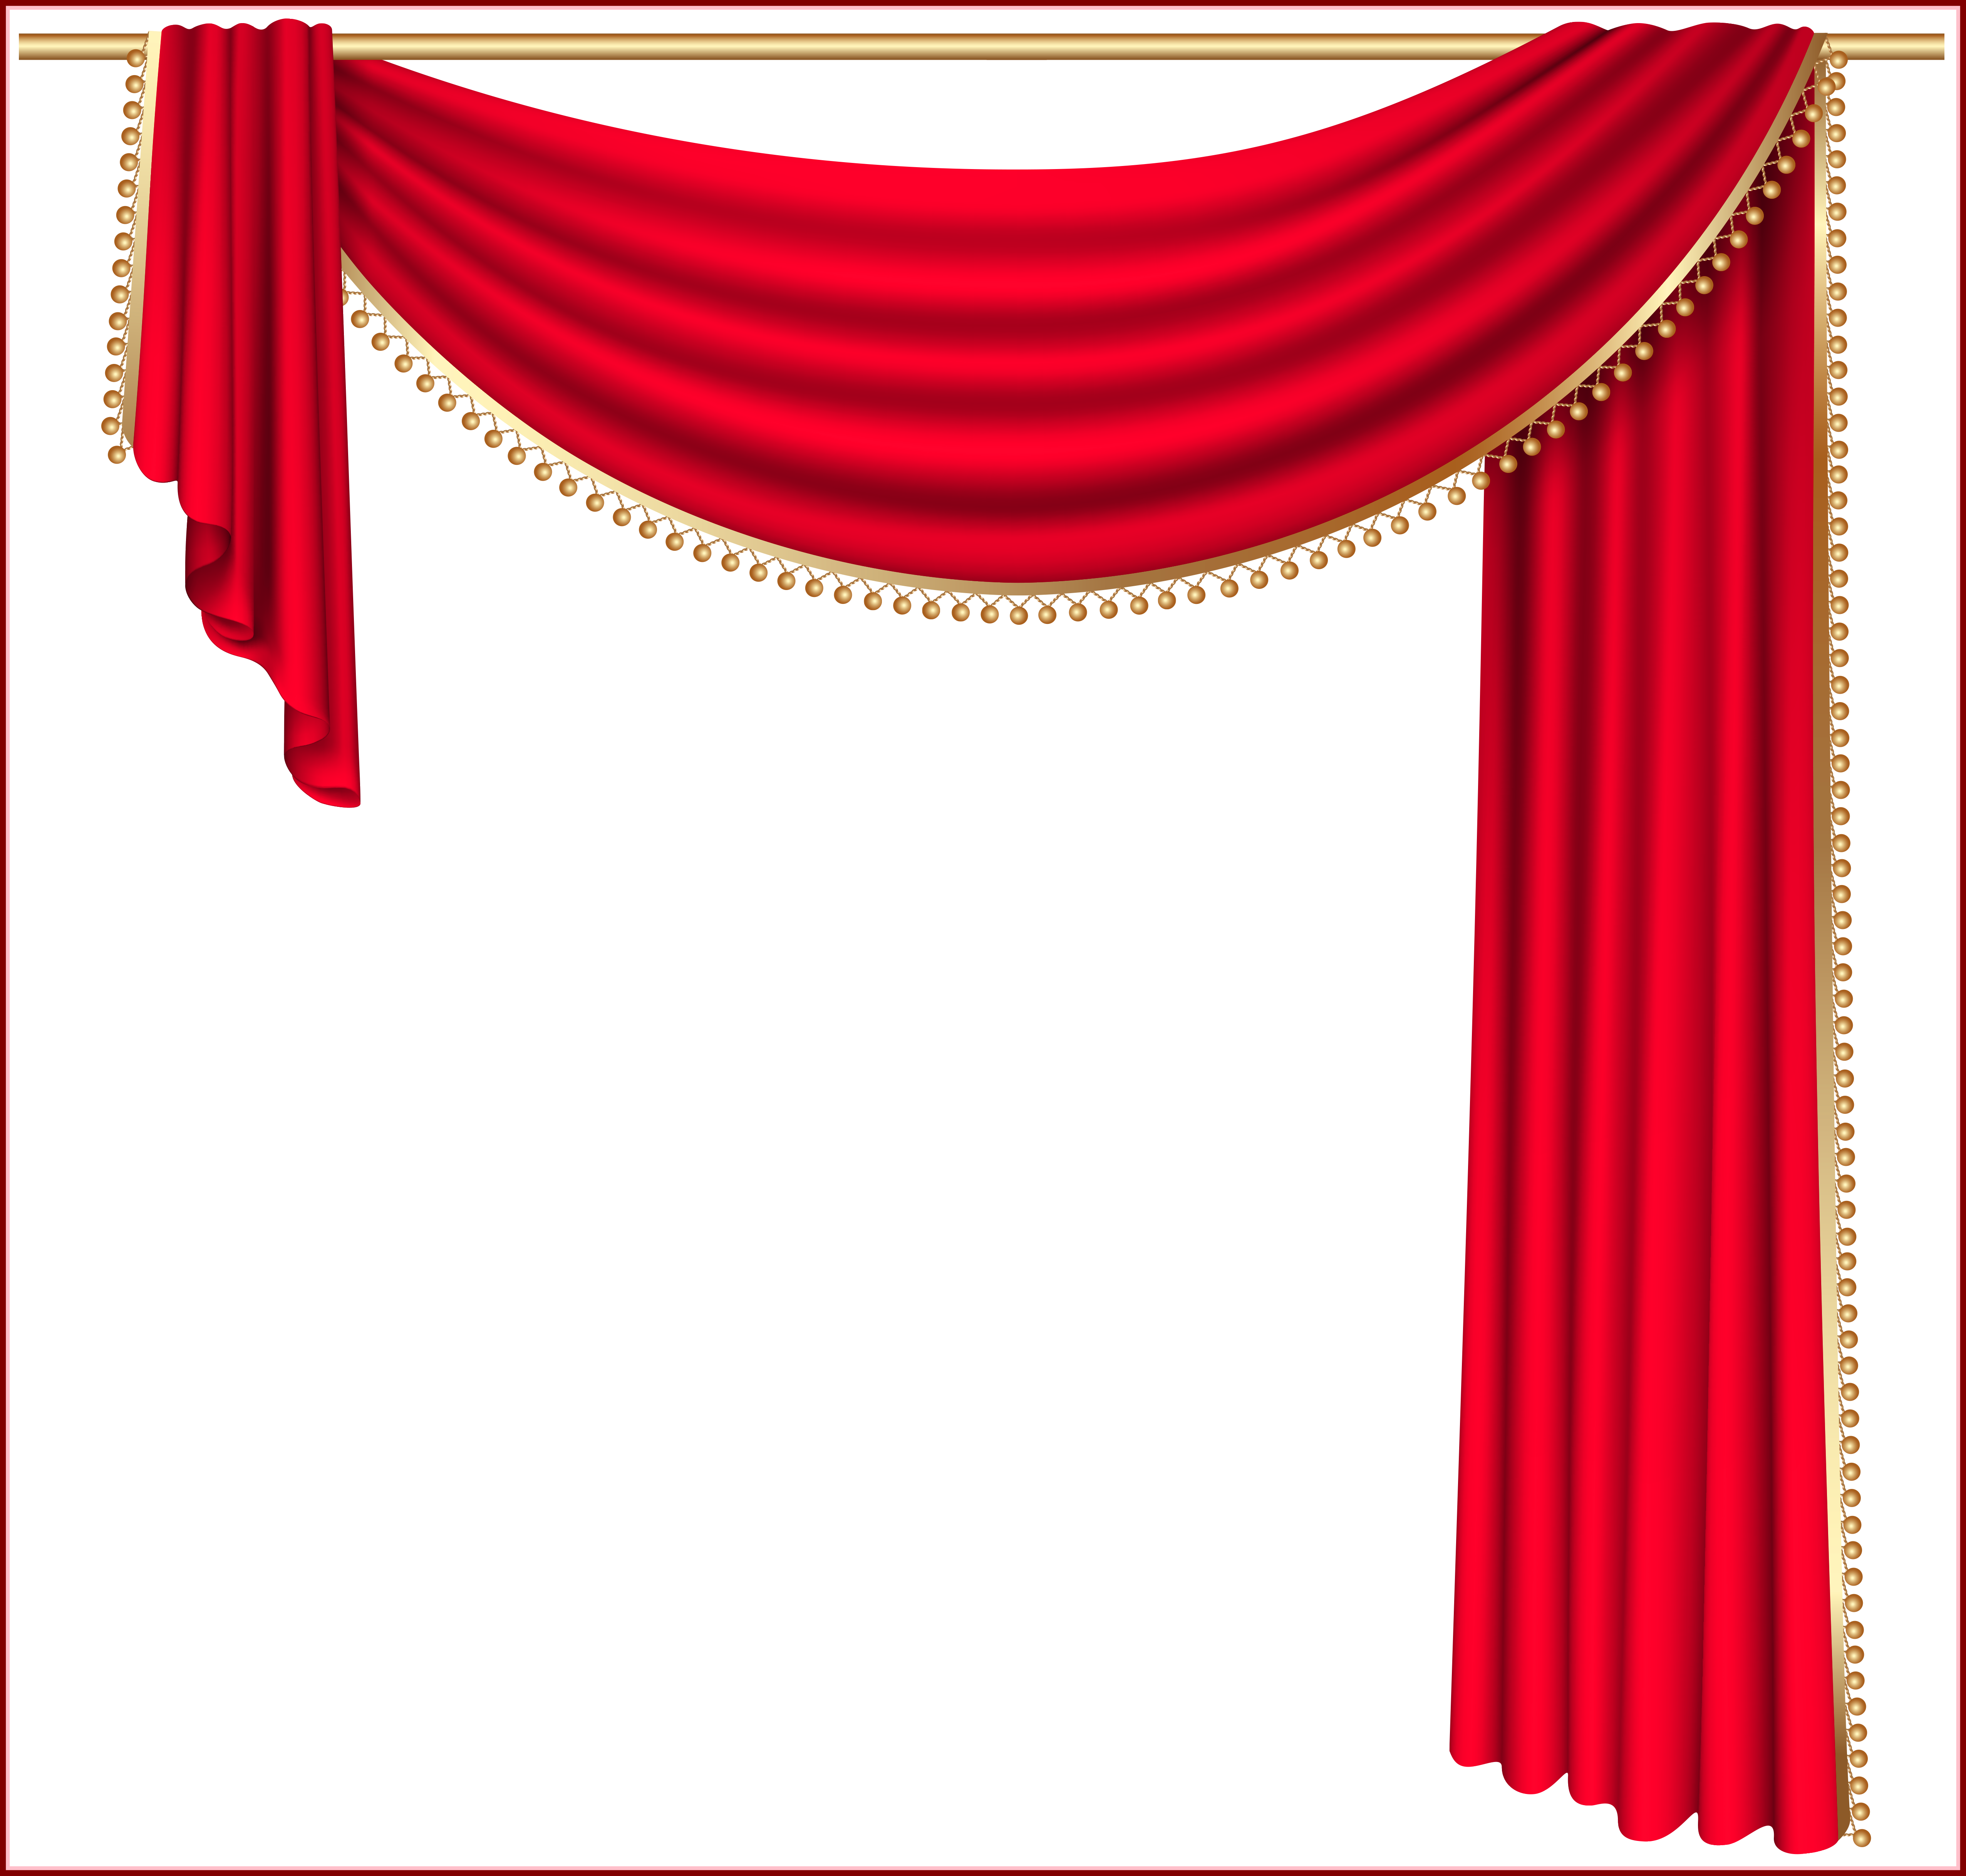 Curtains elegant